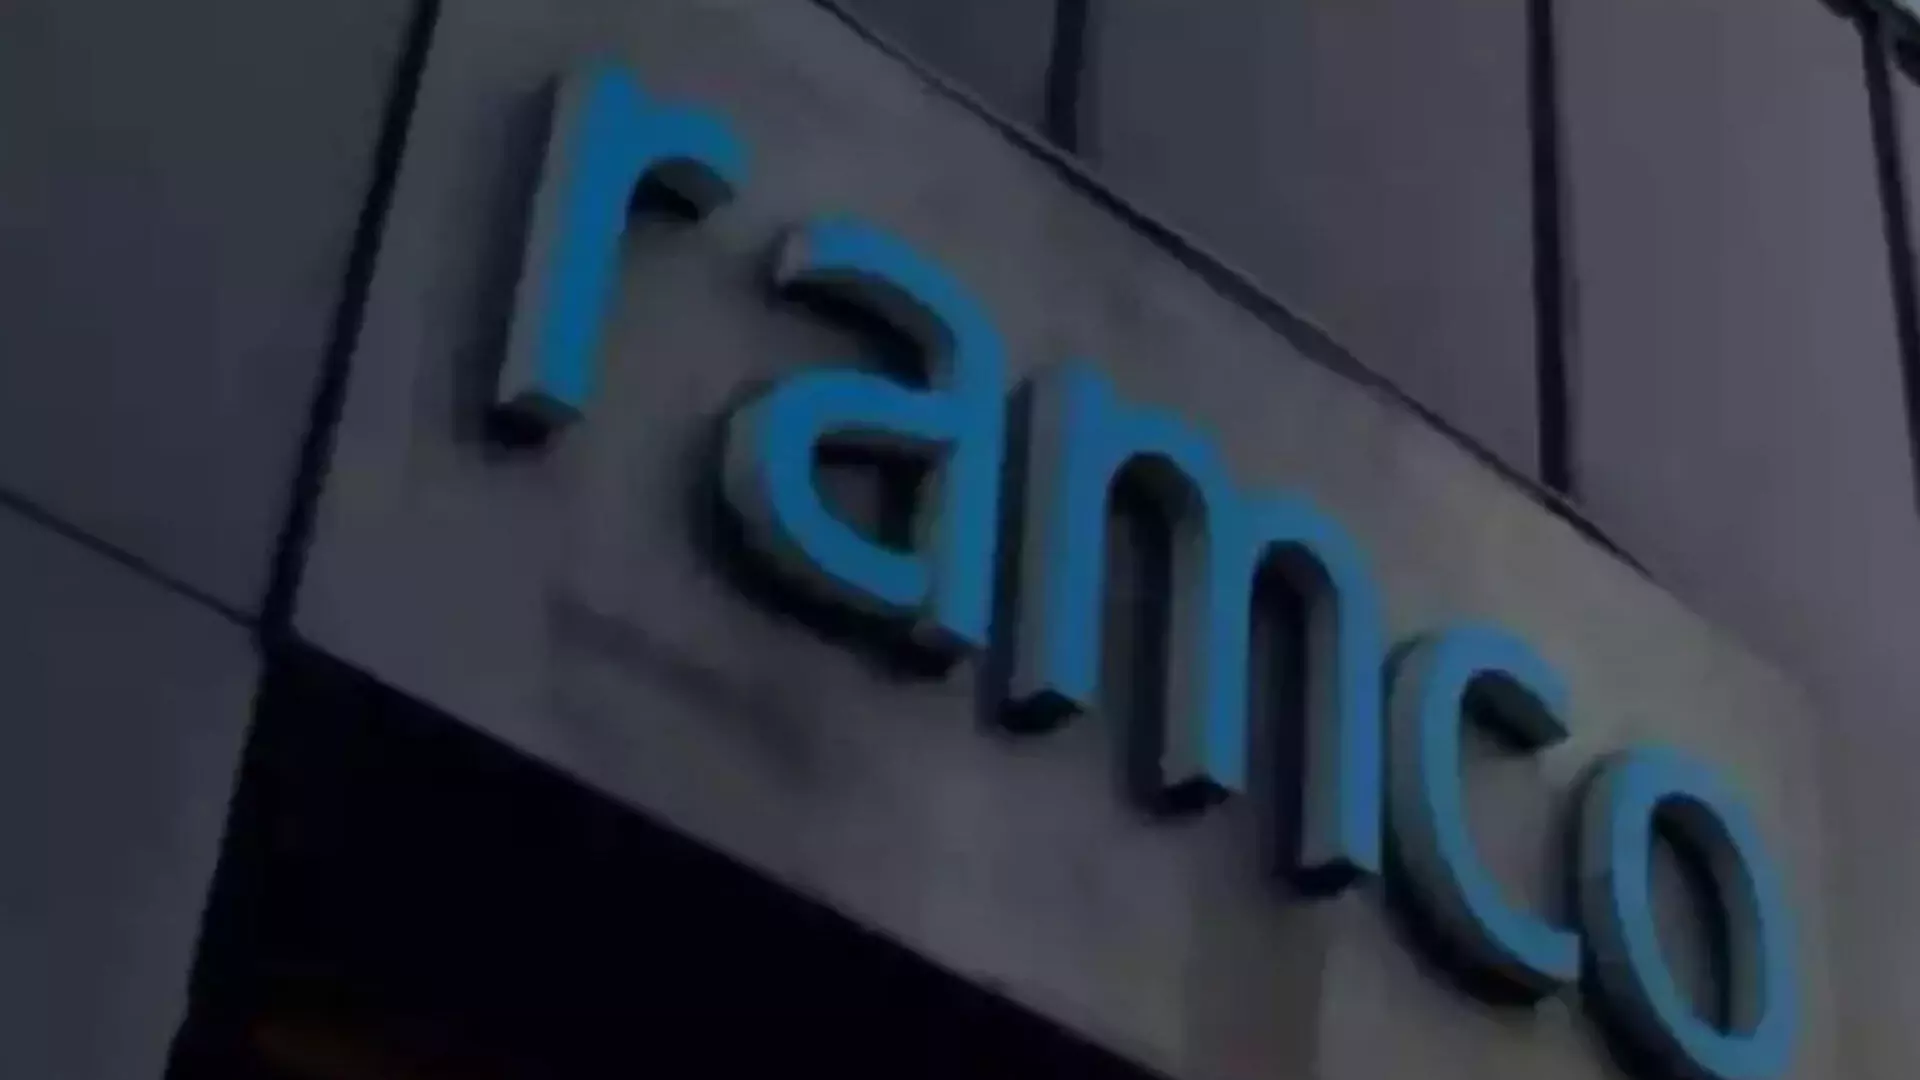 रैम्को सिस्टम्स की मलेशियाई शाखा ने रामसोल ग्रुप के साथ समझौता किया